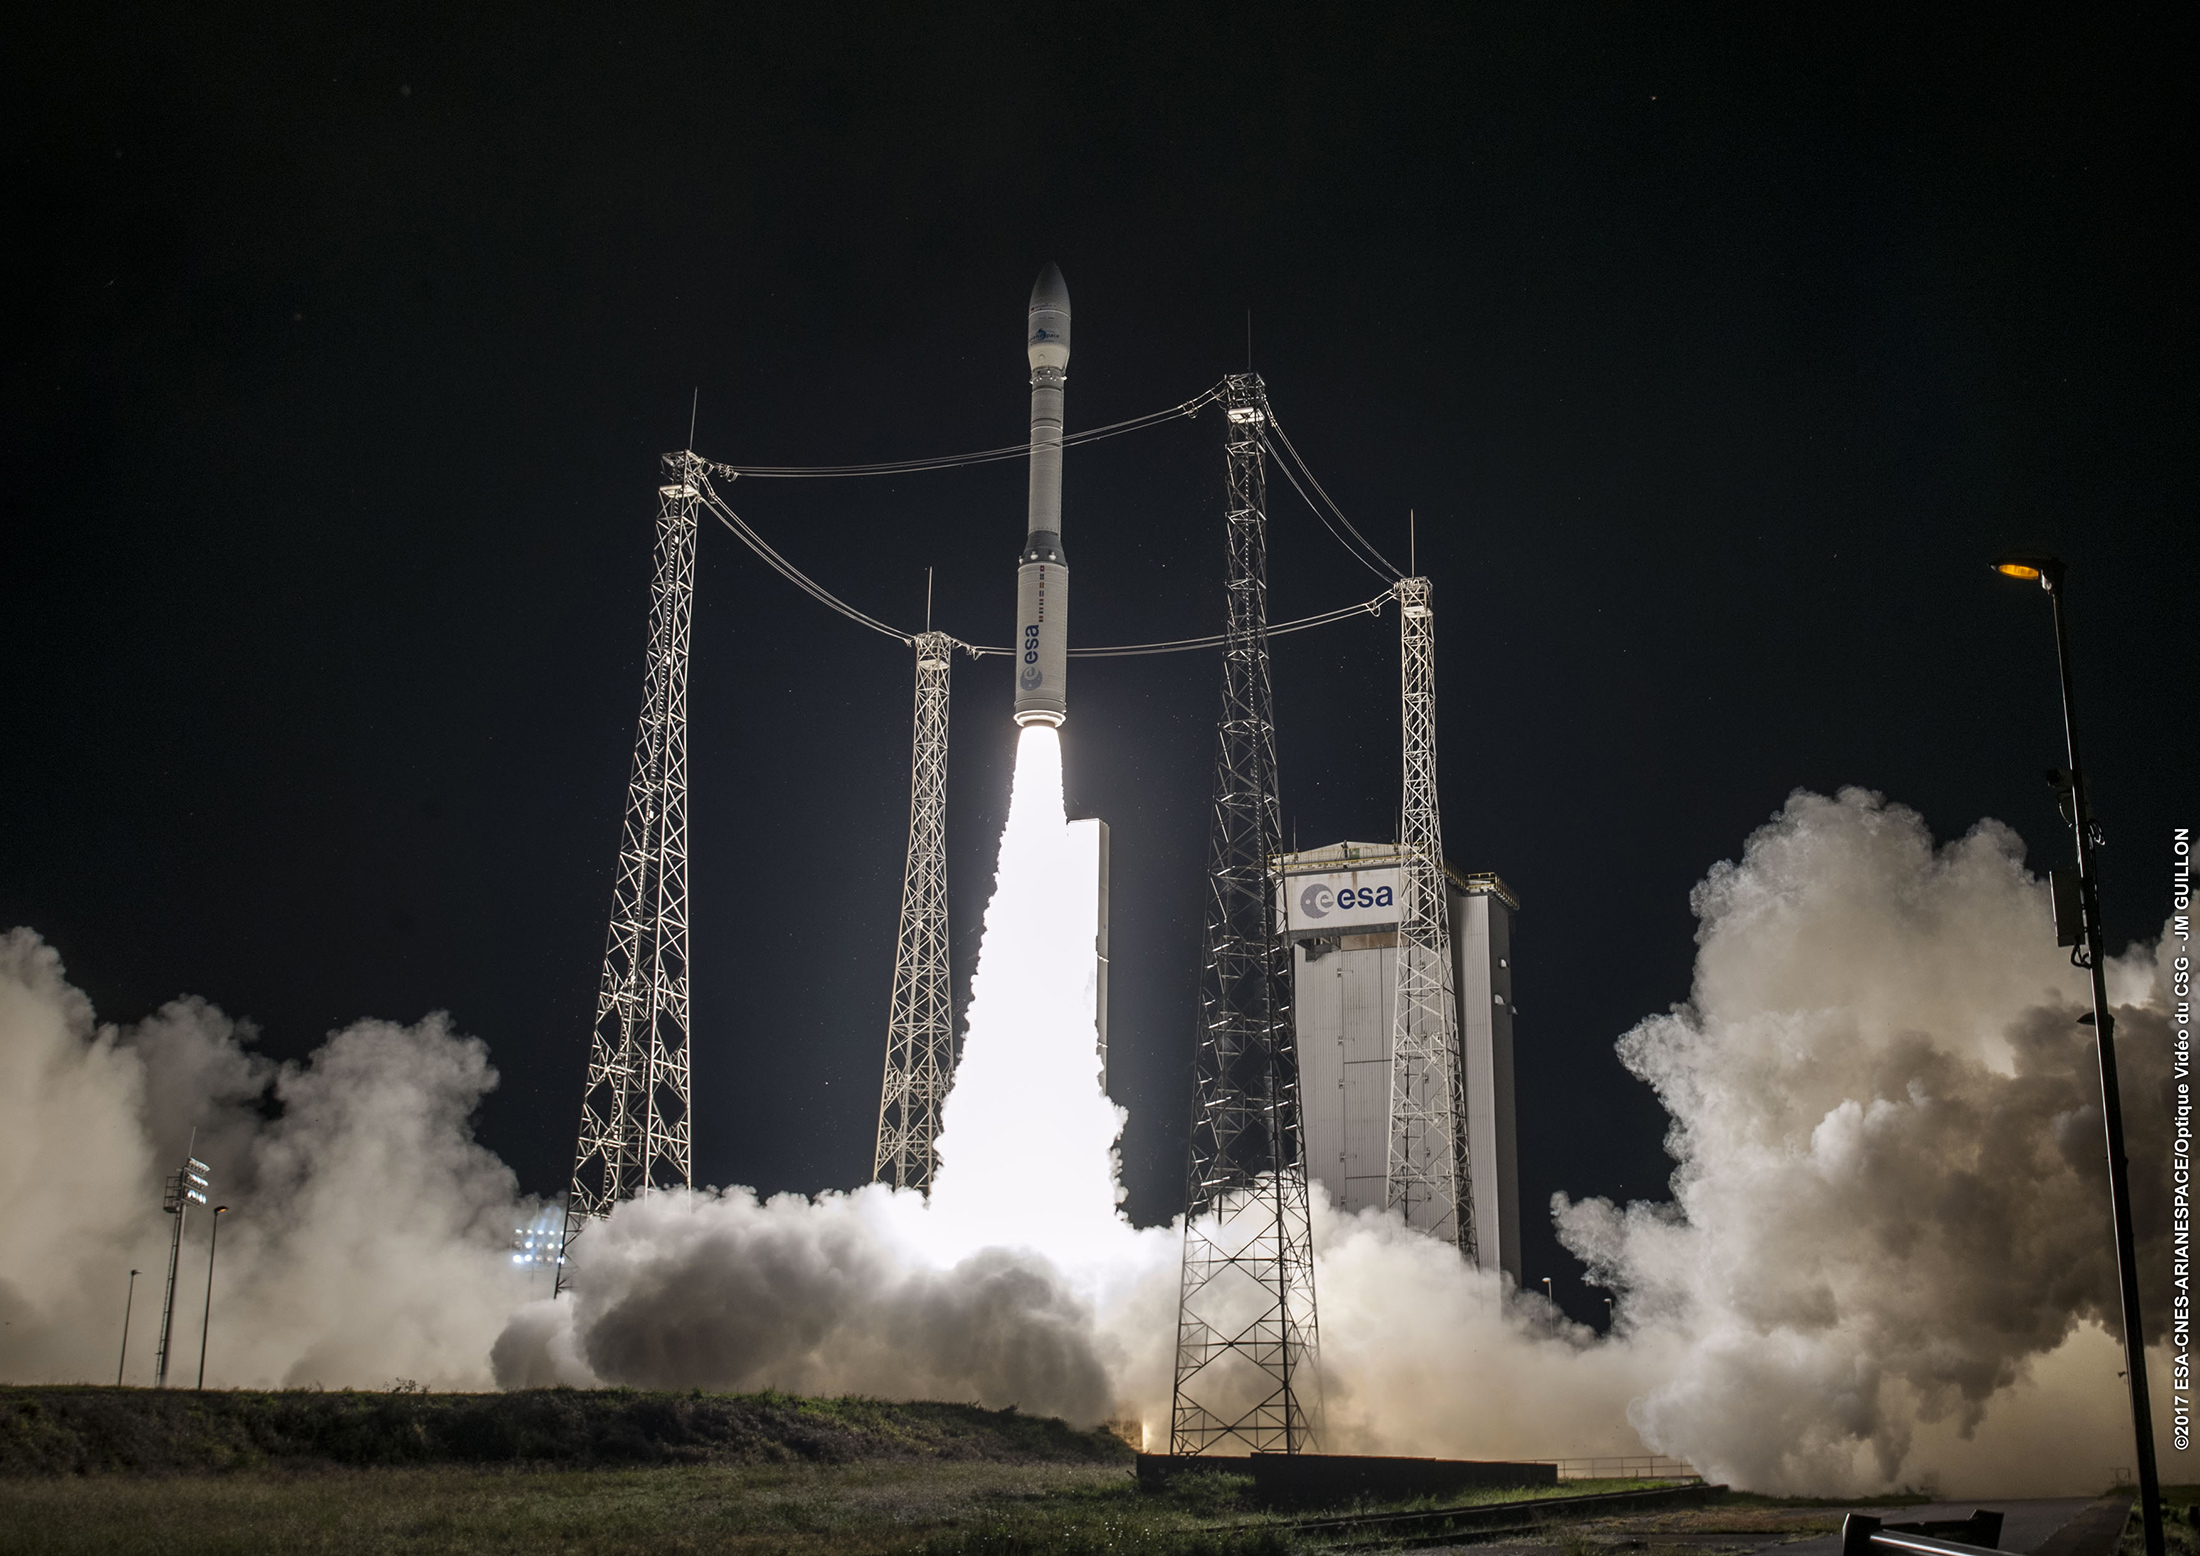 Décollage du lanceur Vega (VV17) le 17 novembre. Huit&nbsp;minutes plus tard, une dégradation de la trajectoire était constatée, entraînant la perte de la mission et des deux satellites d'observation de la Terre que Vega transportait. © ESA, Cnes, Arianespace